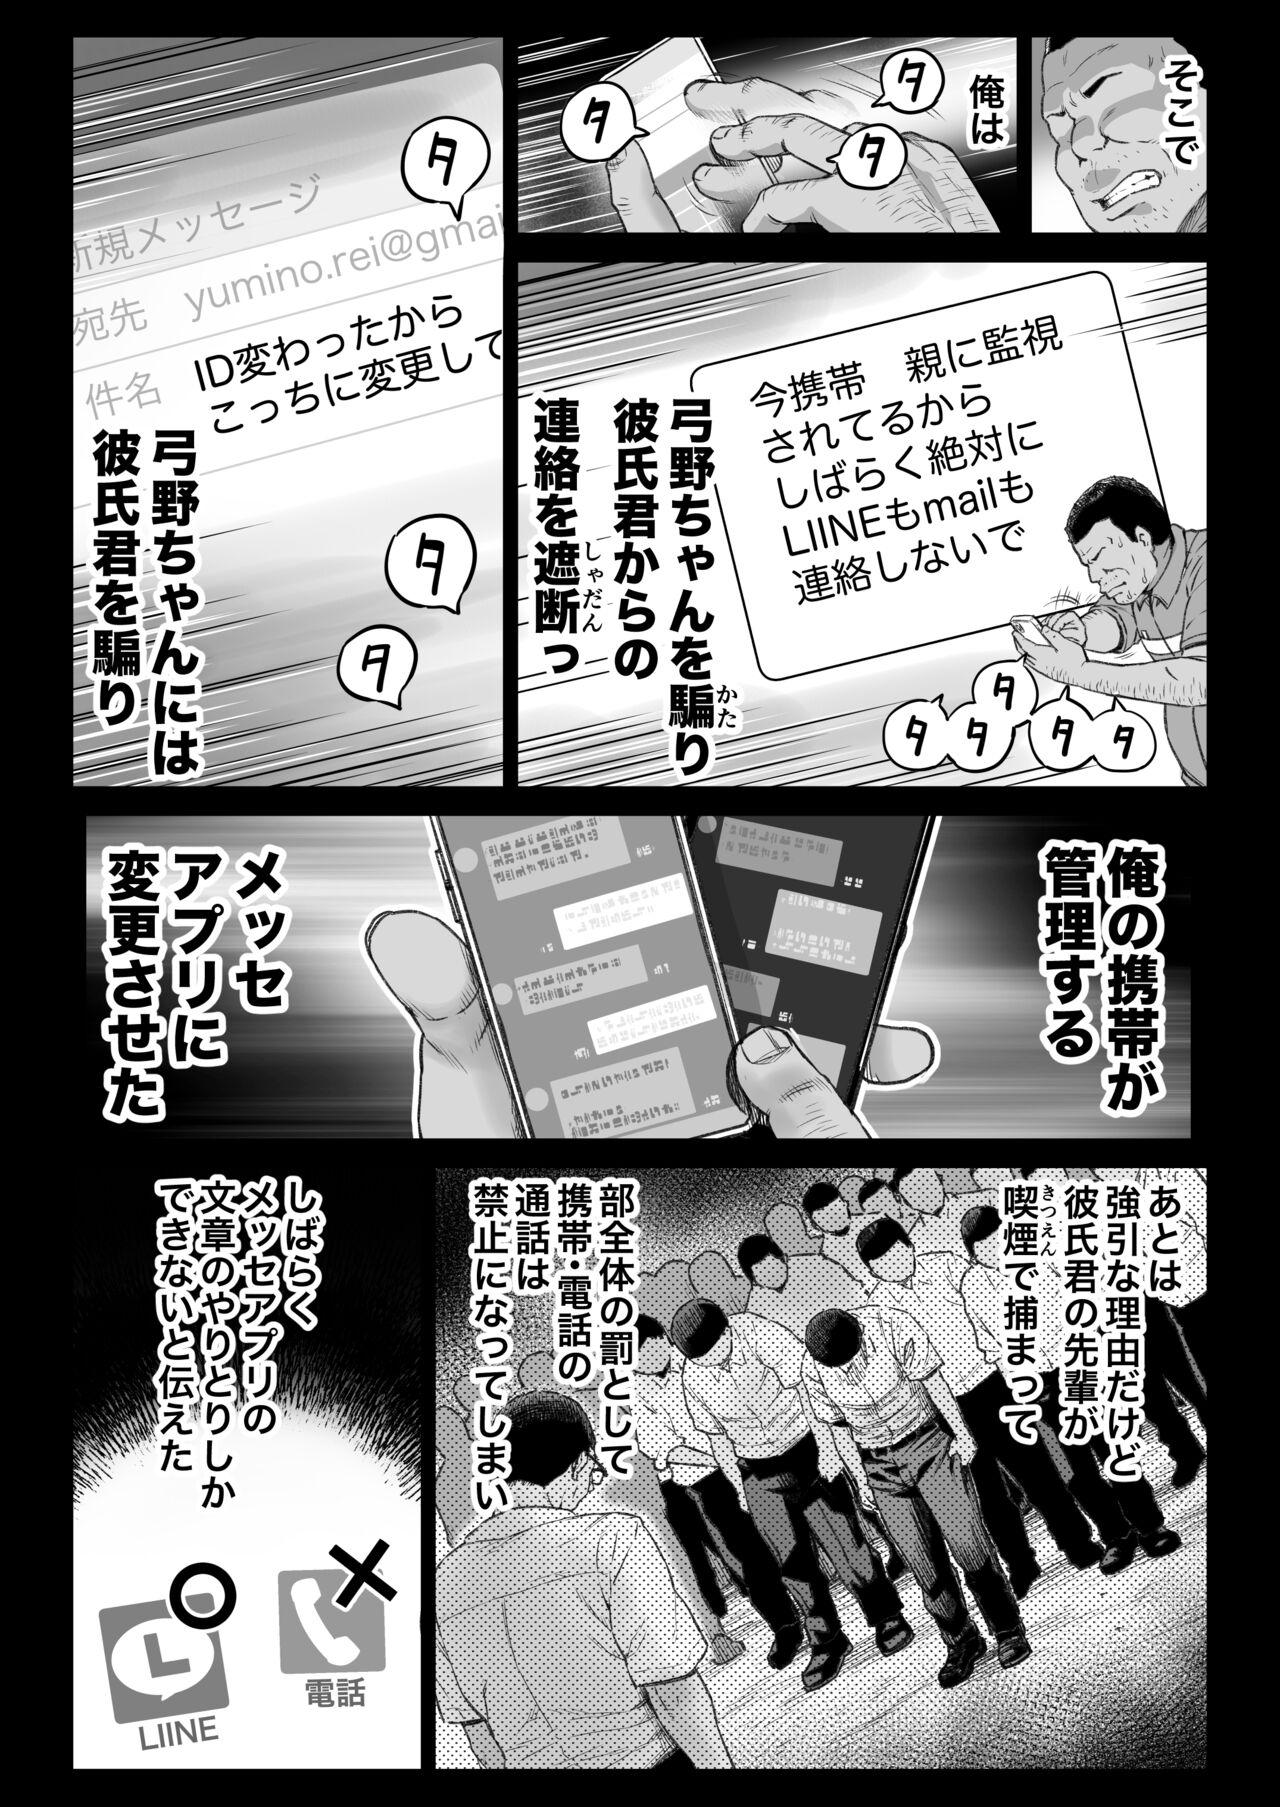 Foot Job Kareshi Mochi Gakusei Beit Yumino-chan wa Kyou mo Tenchou ni Nerawareru - Original Grandma - Page 8